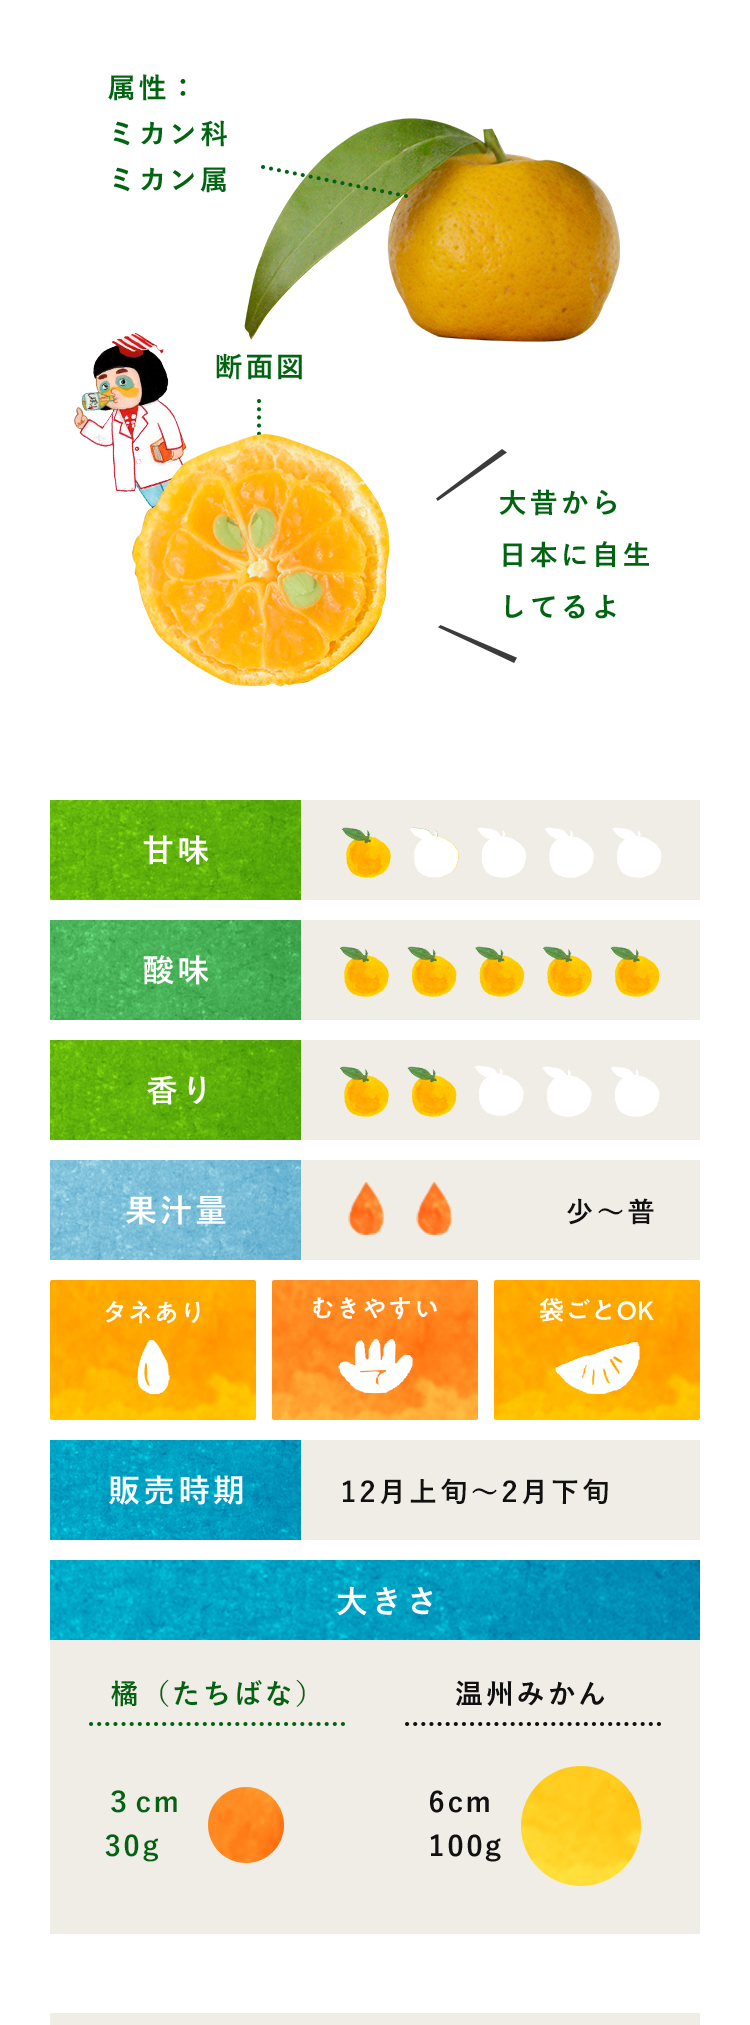 橘(たちばな)